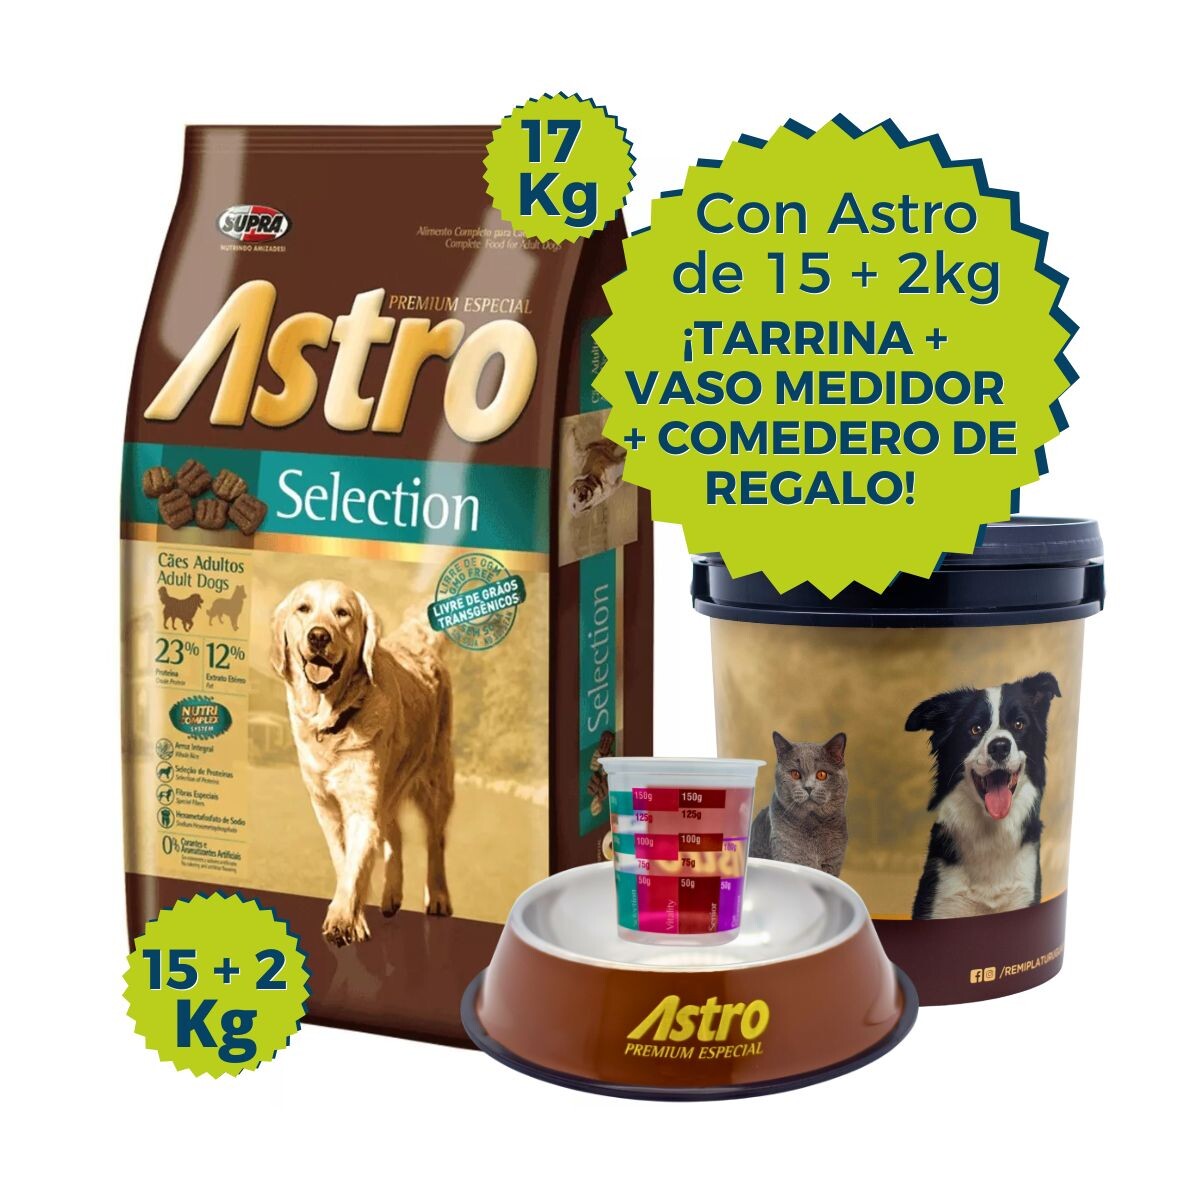 ASTRO PERROS ADULTOS SELECTION 15 + 2KG + TARRINA + COMEDERO + VASO MEDIDOR 